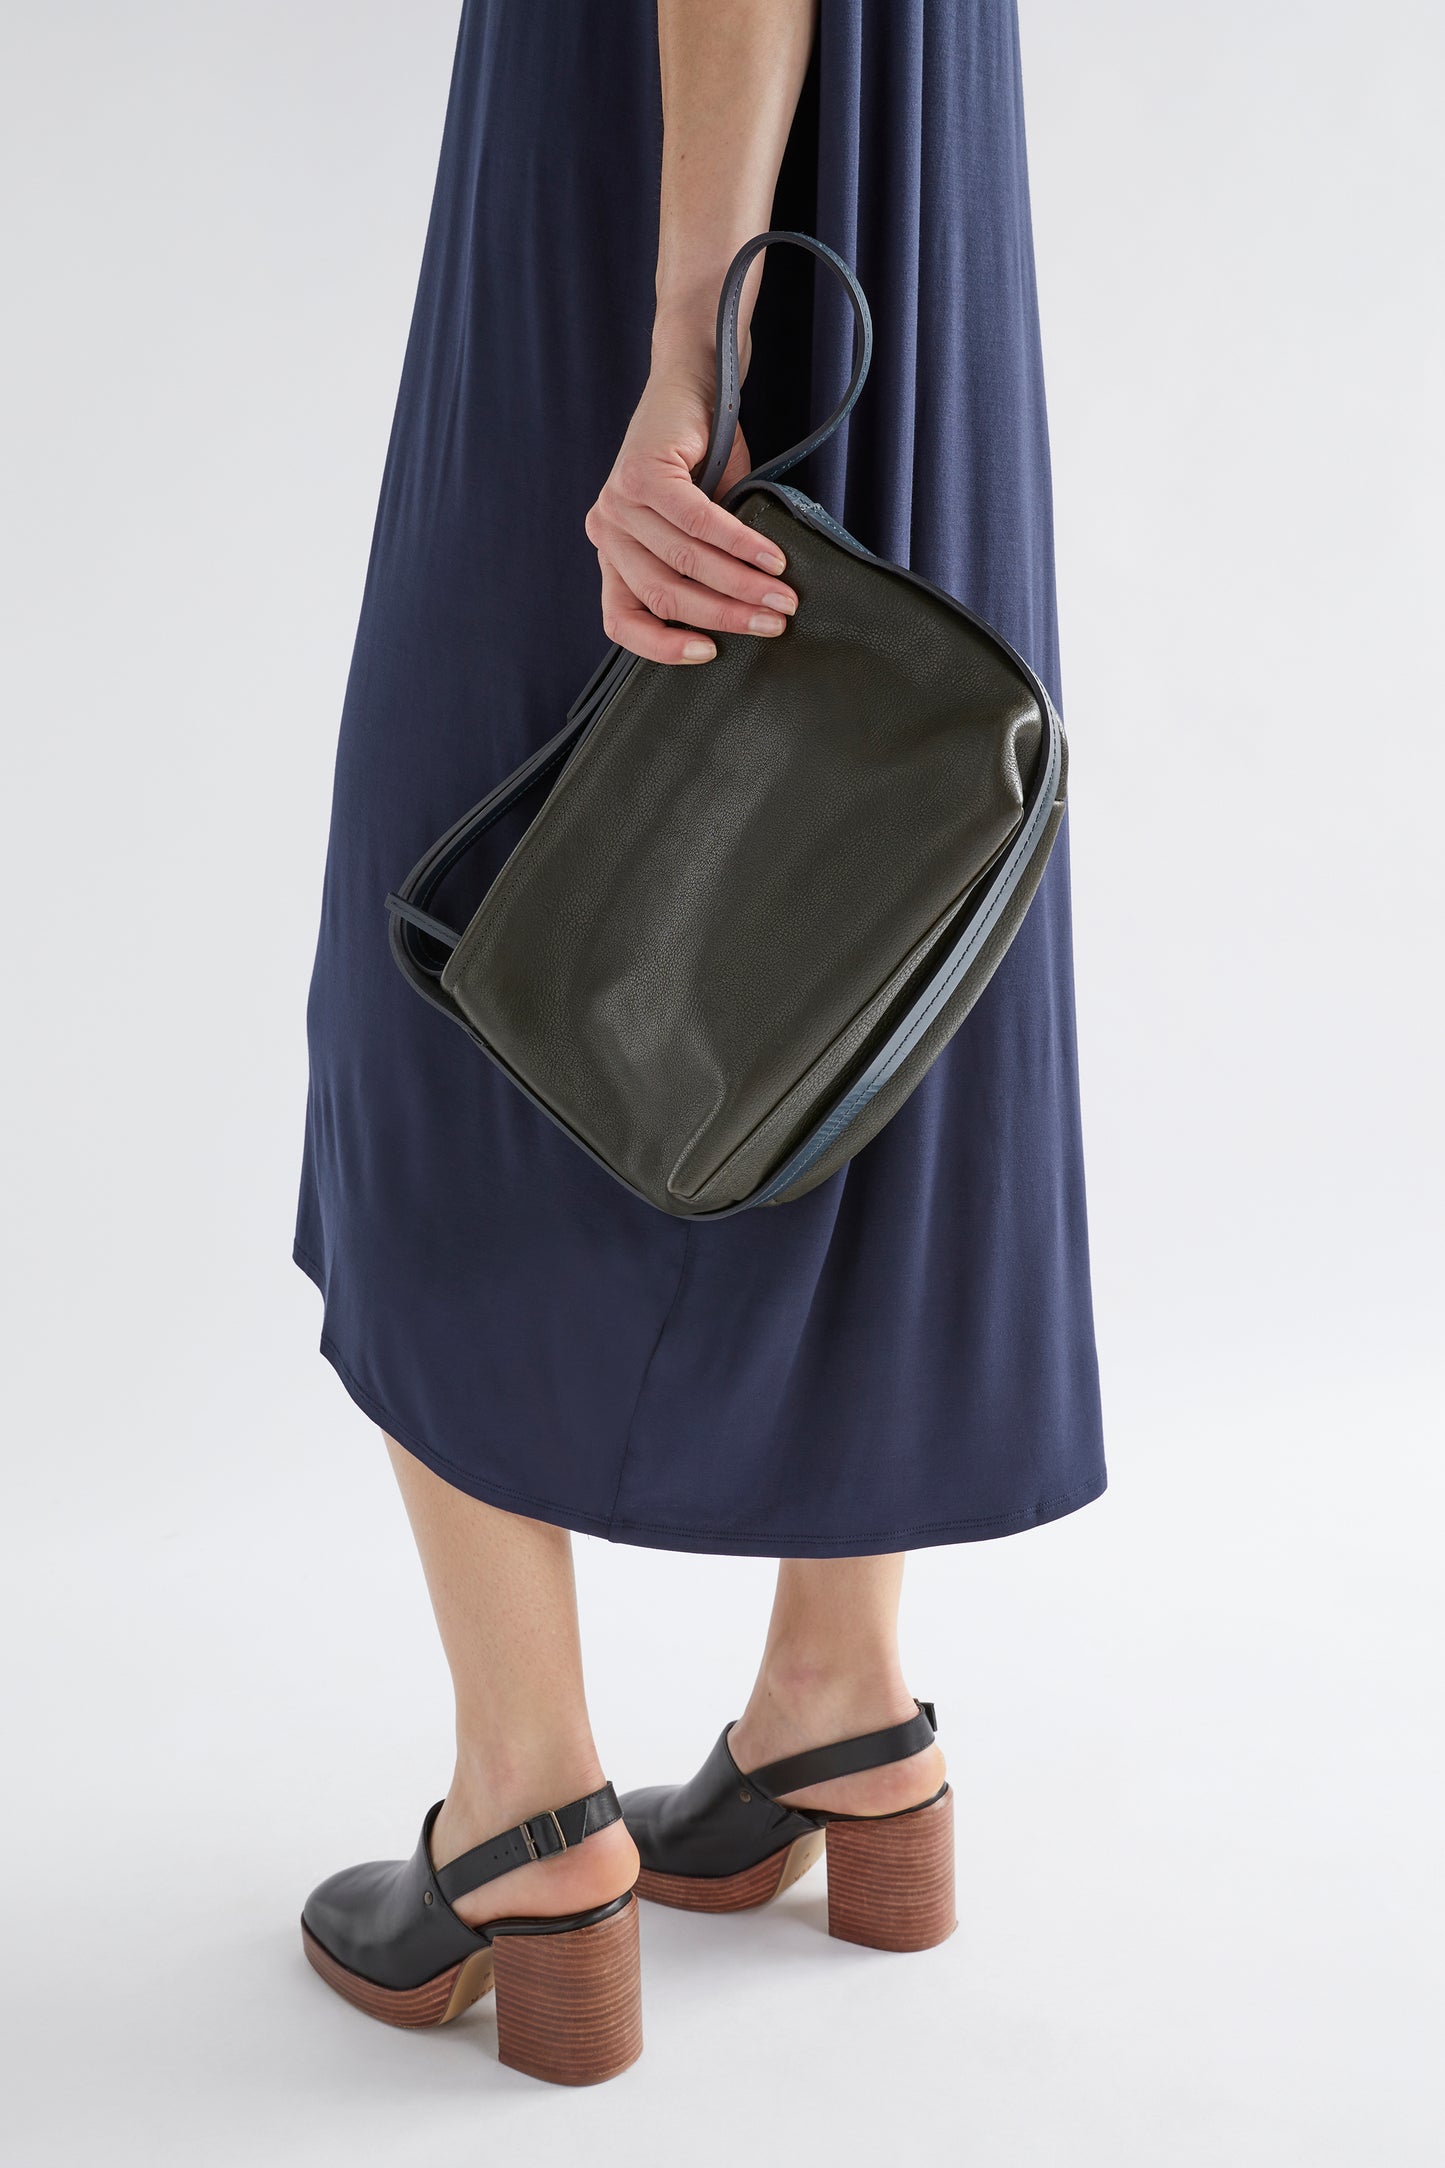 Canutte Leather Bag Front Model | GREEN TEA / NAVY